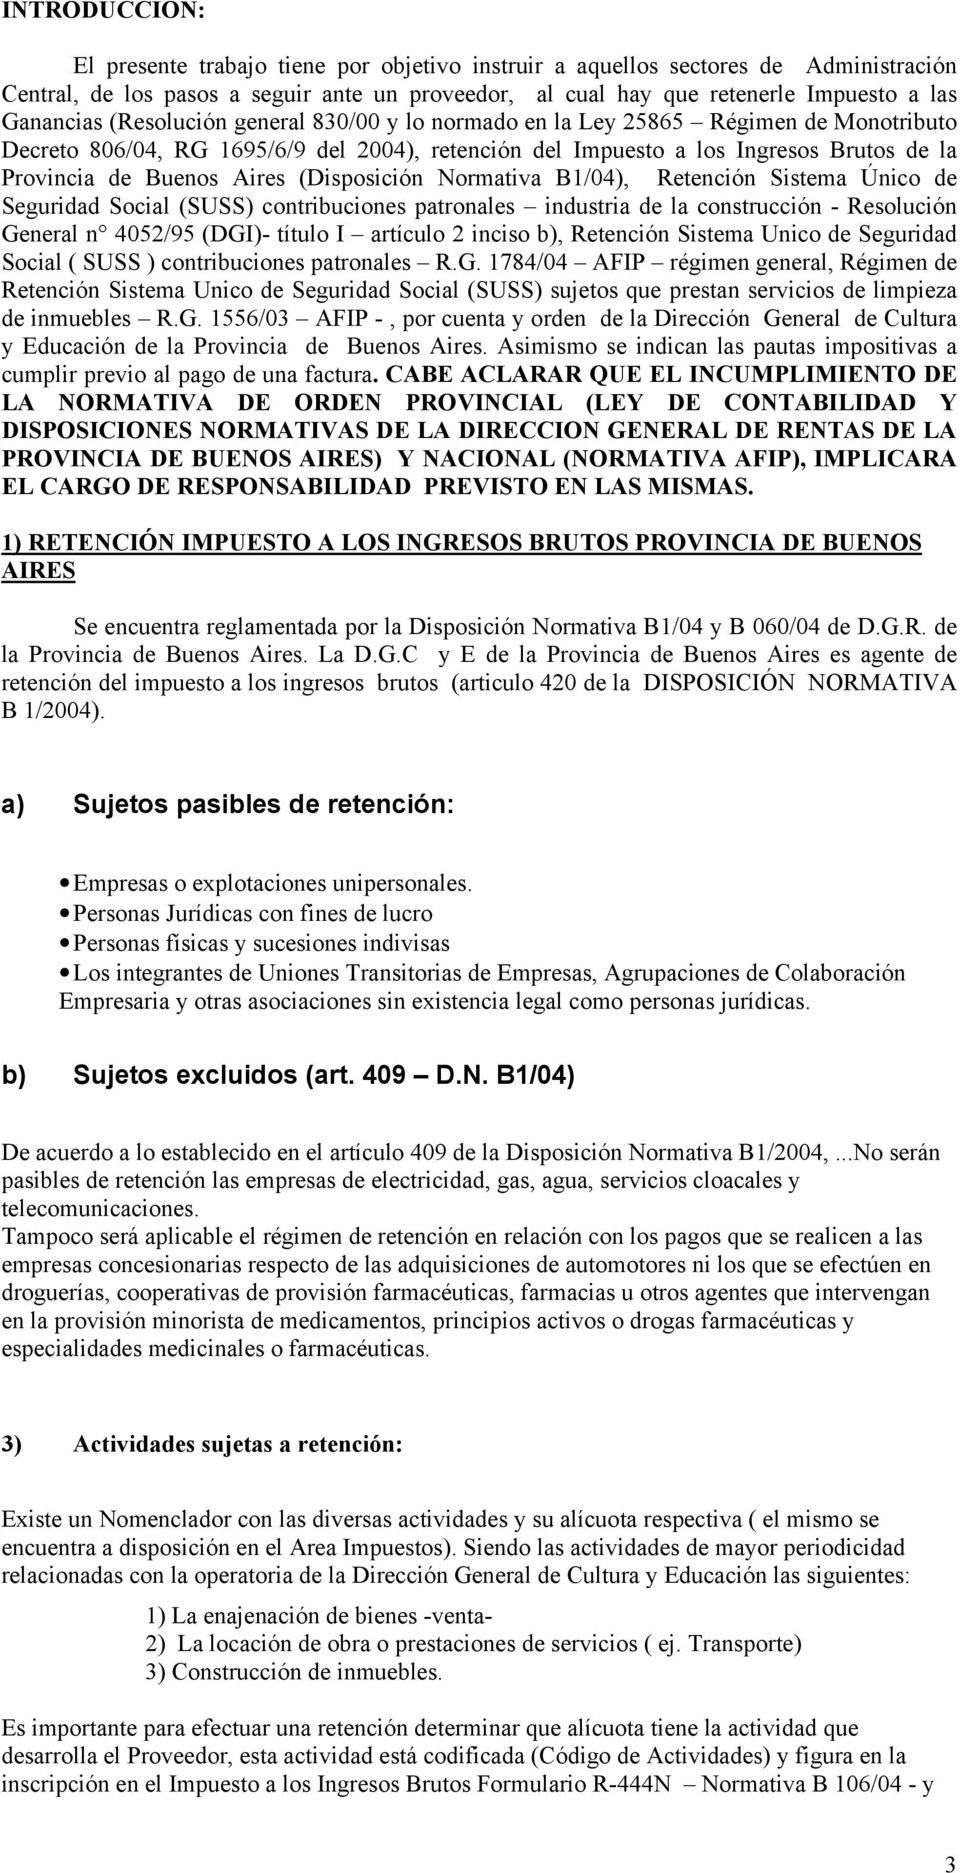 Aires (Disposición Normativa B1/04), Retención Sistema Único de Seguridad Social (SUSS) contribuciones patronales industria de la construcción - Resolución General n 4052/95 (DGI)- título I artículo